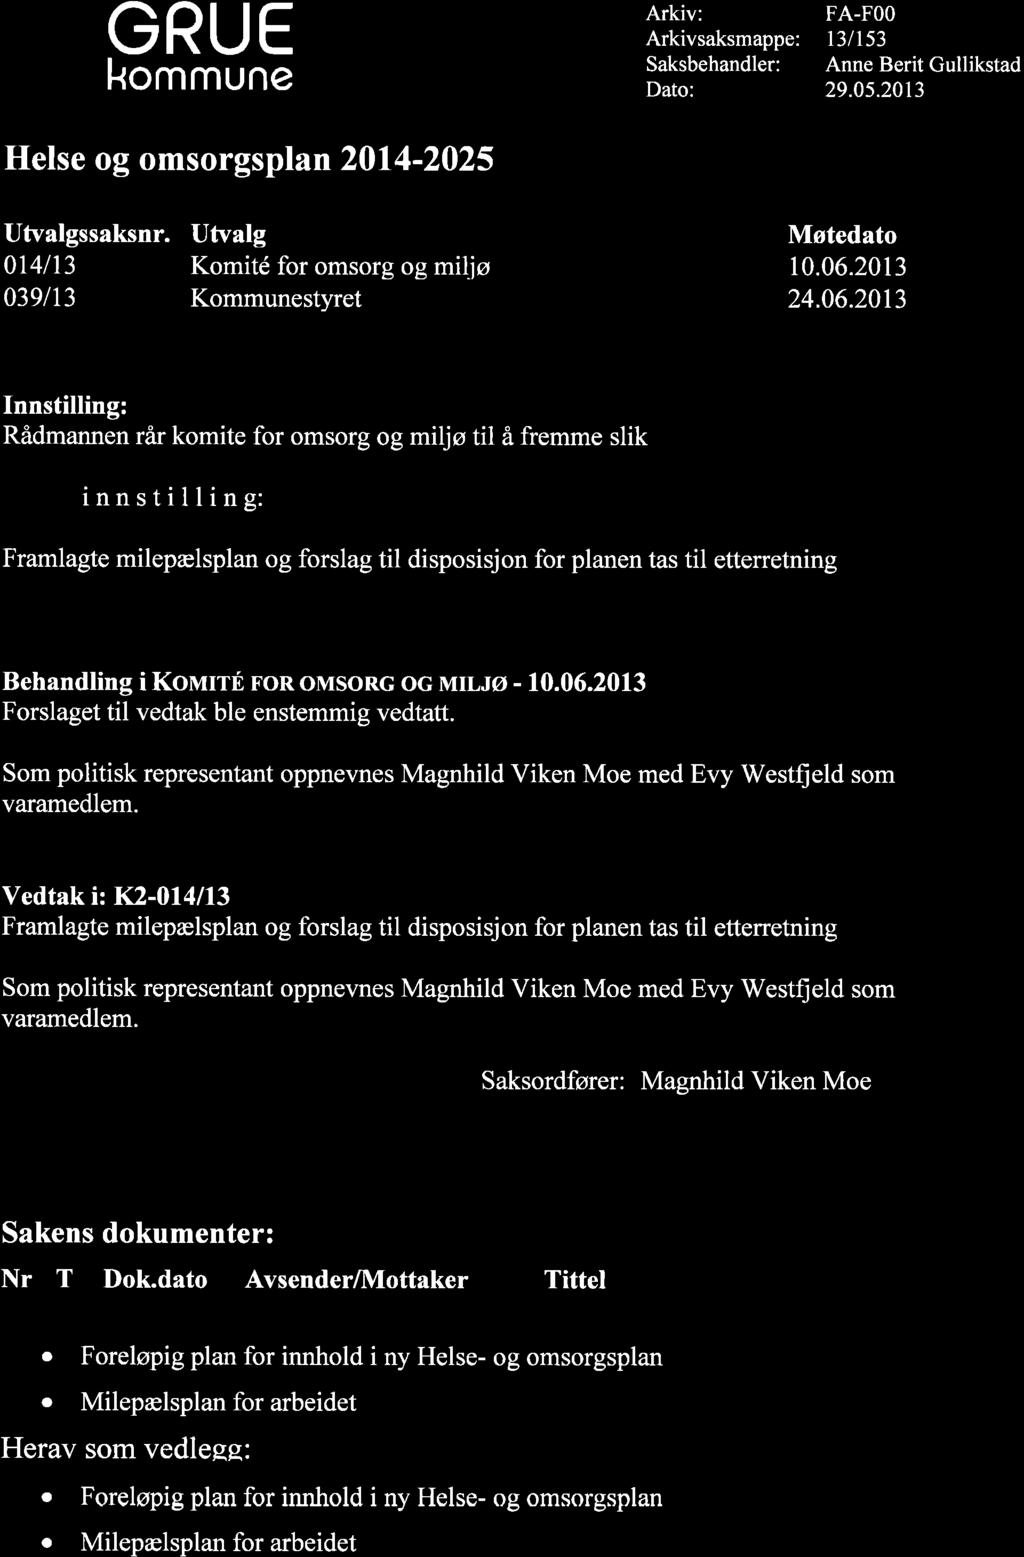 GRUE kommune Helse og omsorgsplan 2014-2025 Arkiv: Arkivsaksmappe: Saksbehandler: Dato: FA-FOO t3lt53 Anne Berit Gullikstad 29.0s.2013 Utvalgssaksnr.